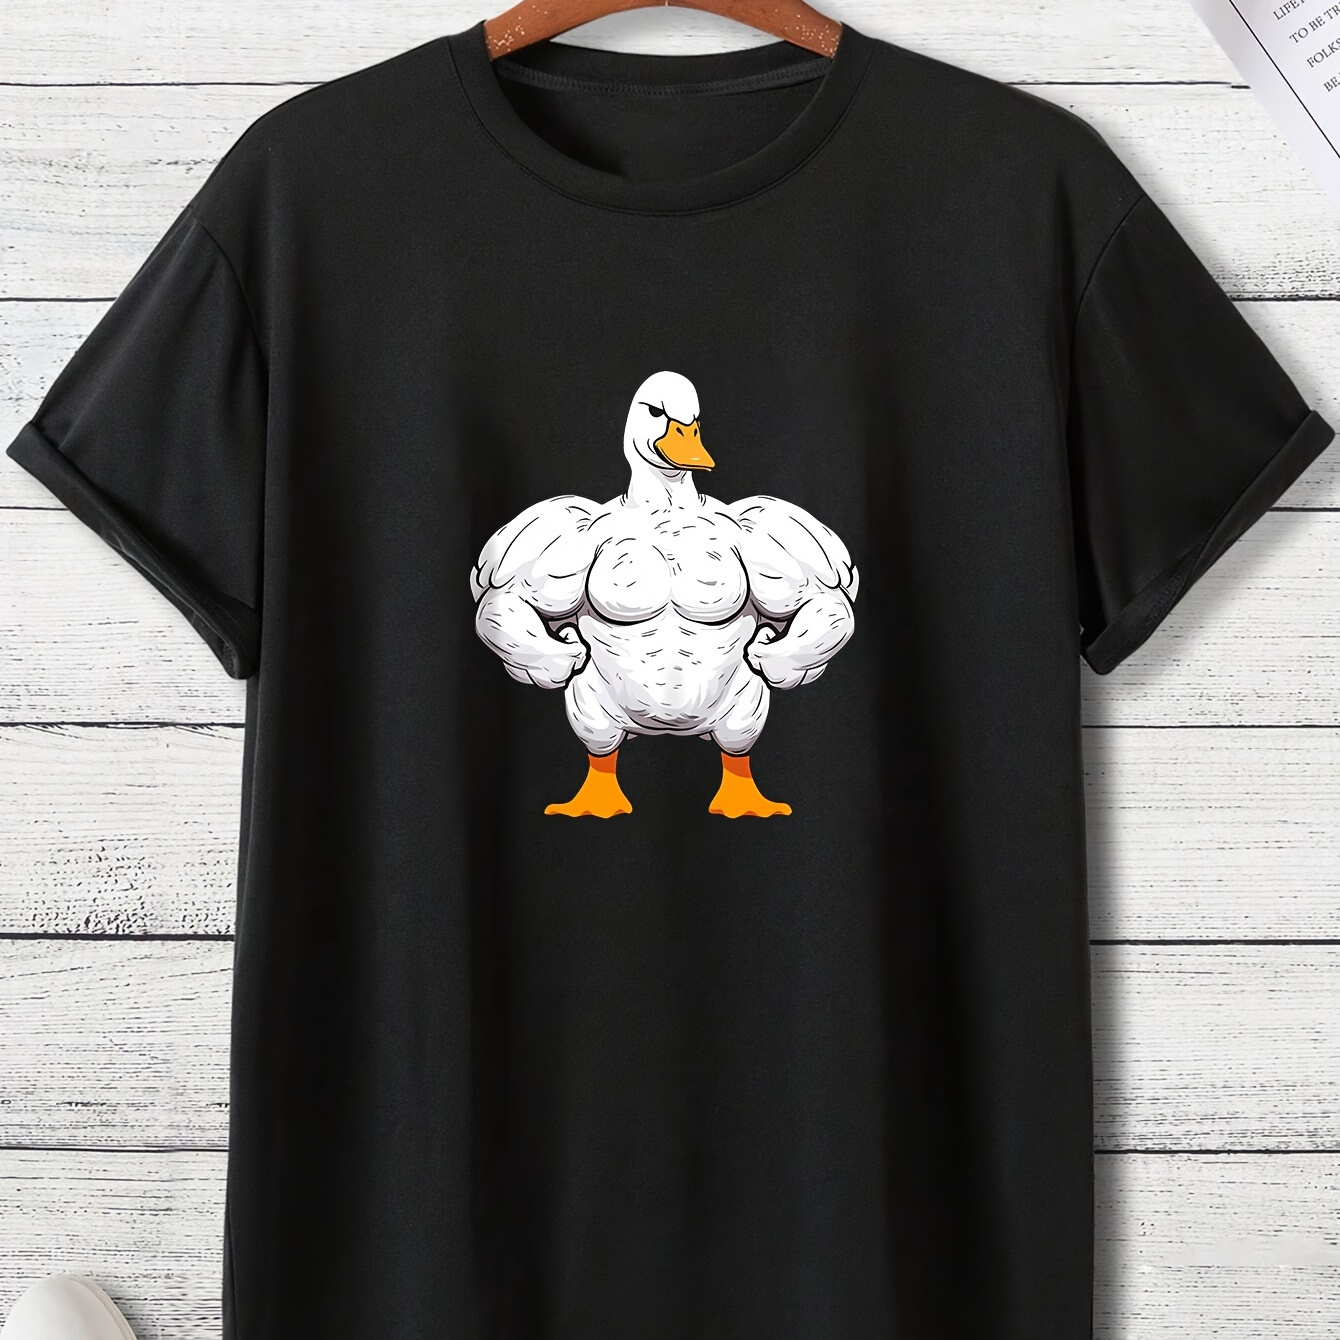 

Cartoon Muscle Duck Pattern Men's Casual Short Sleeve Crew Neck T-shirt, Summer Outdoor